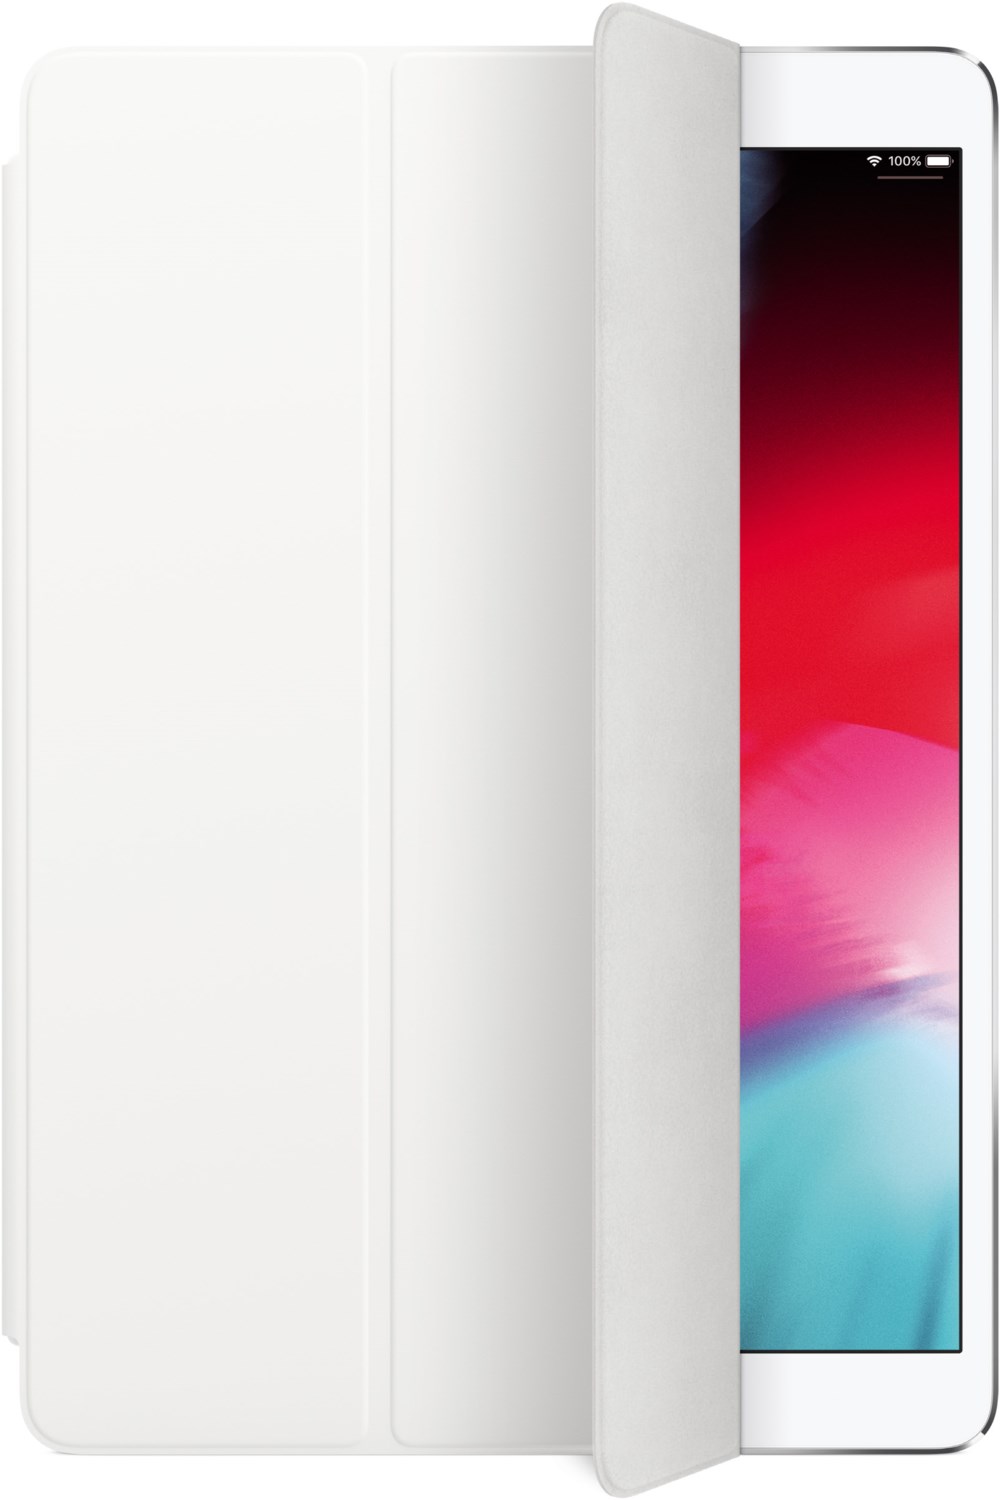 Smart Cover für iPad Pro 10,5 weiß